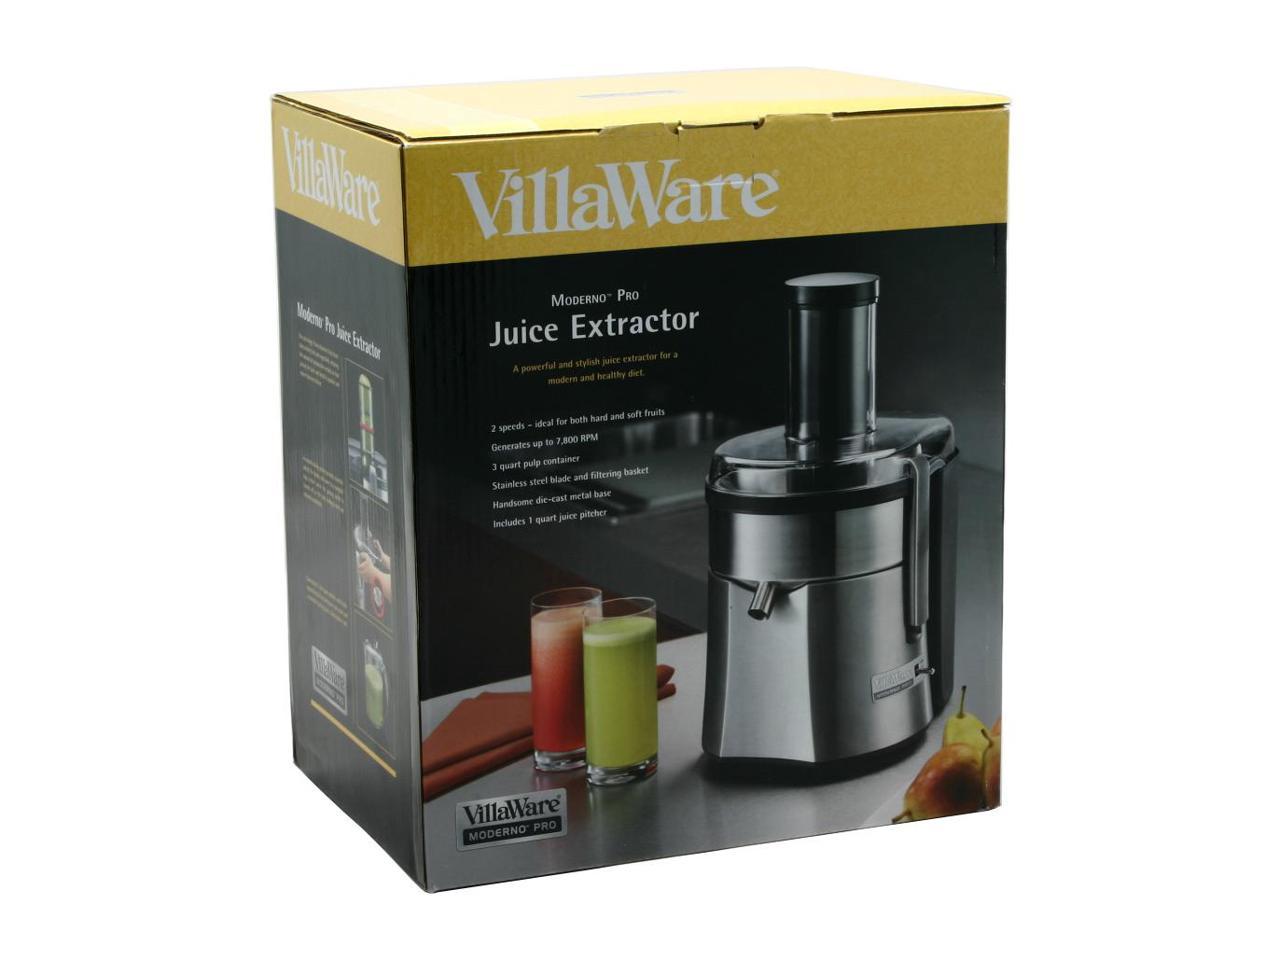 VillaWare V001-43001-001 Moderno Pro 550-Watt Juice Extractor 